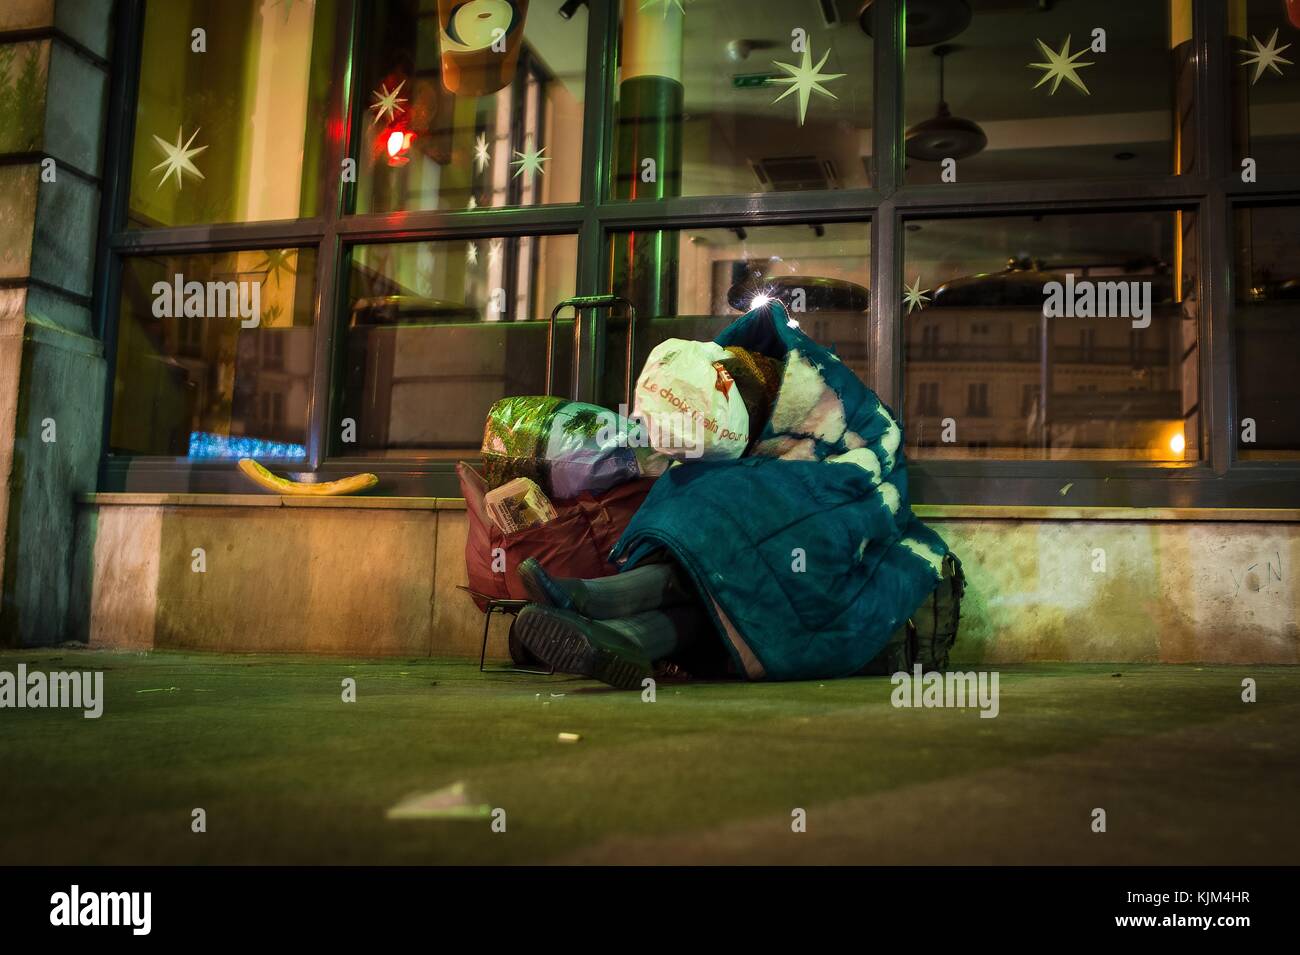 Pauvreté urbaine - 22/11/2012 - - la vieille dame. - dormir avec un sac en plastique sur sa tête. - se protéger. Gare Saint Lazare la nuit. - Sylvain Leser / le Pictorium Banque D'Images